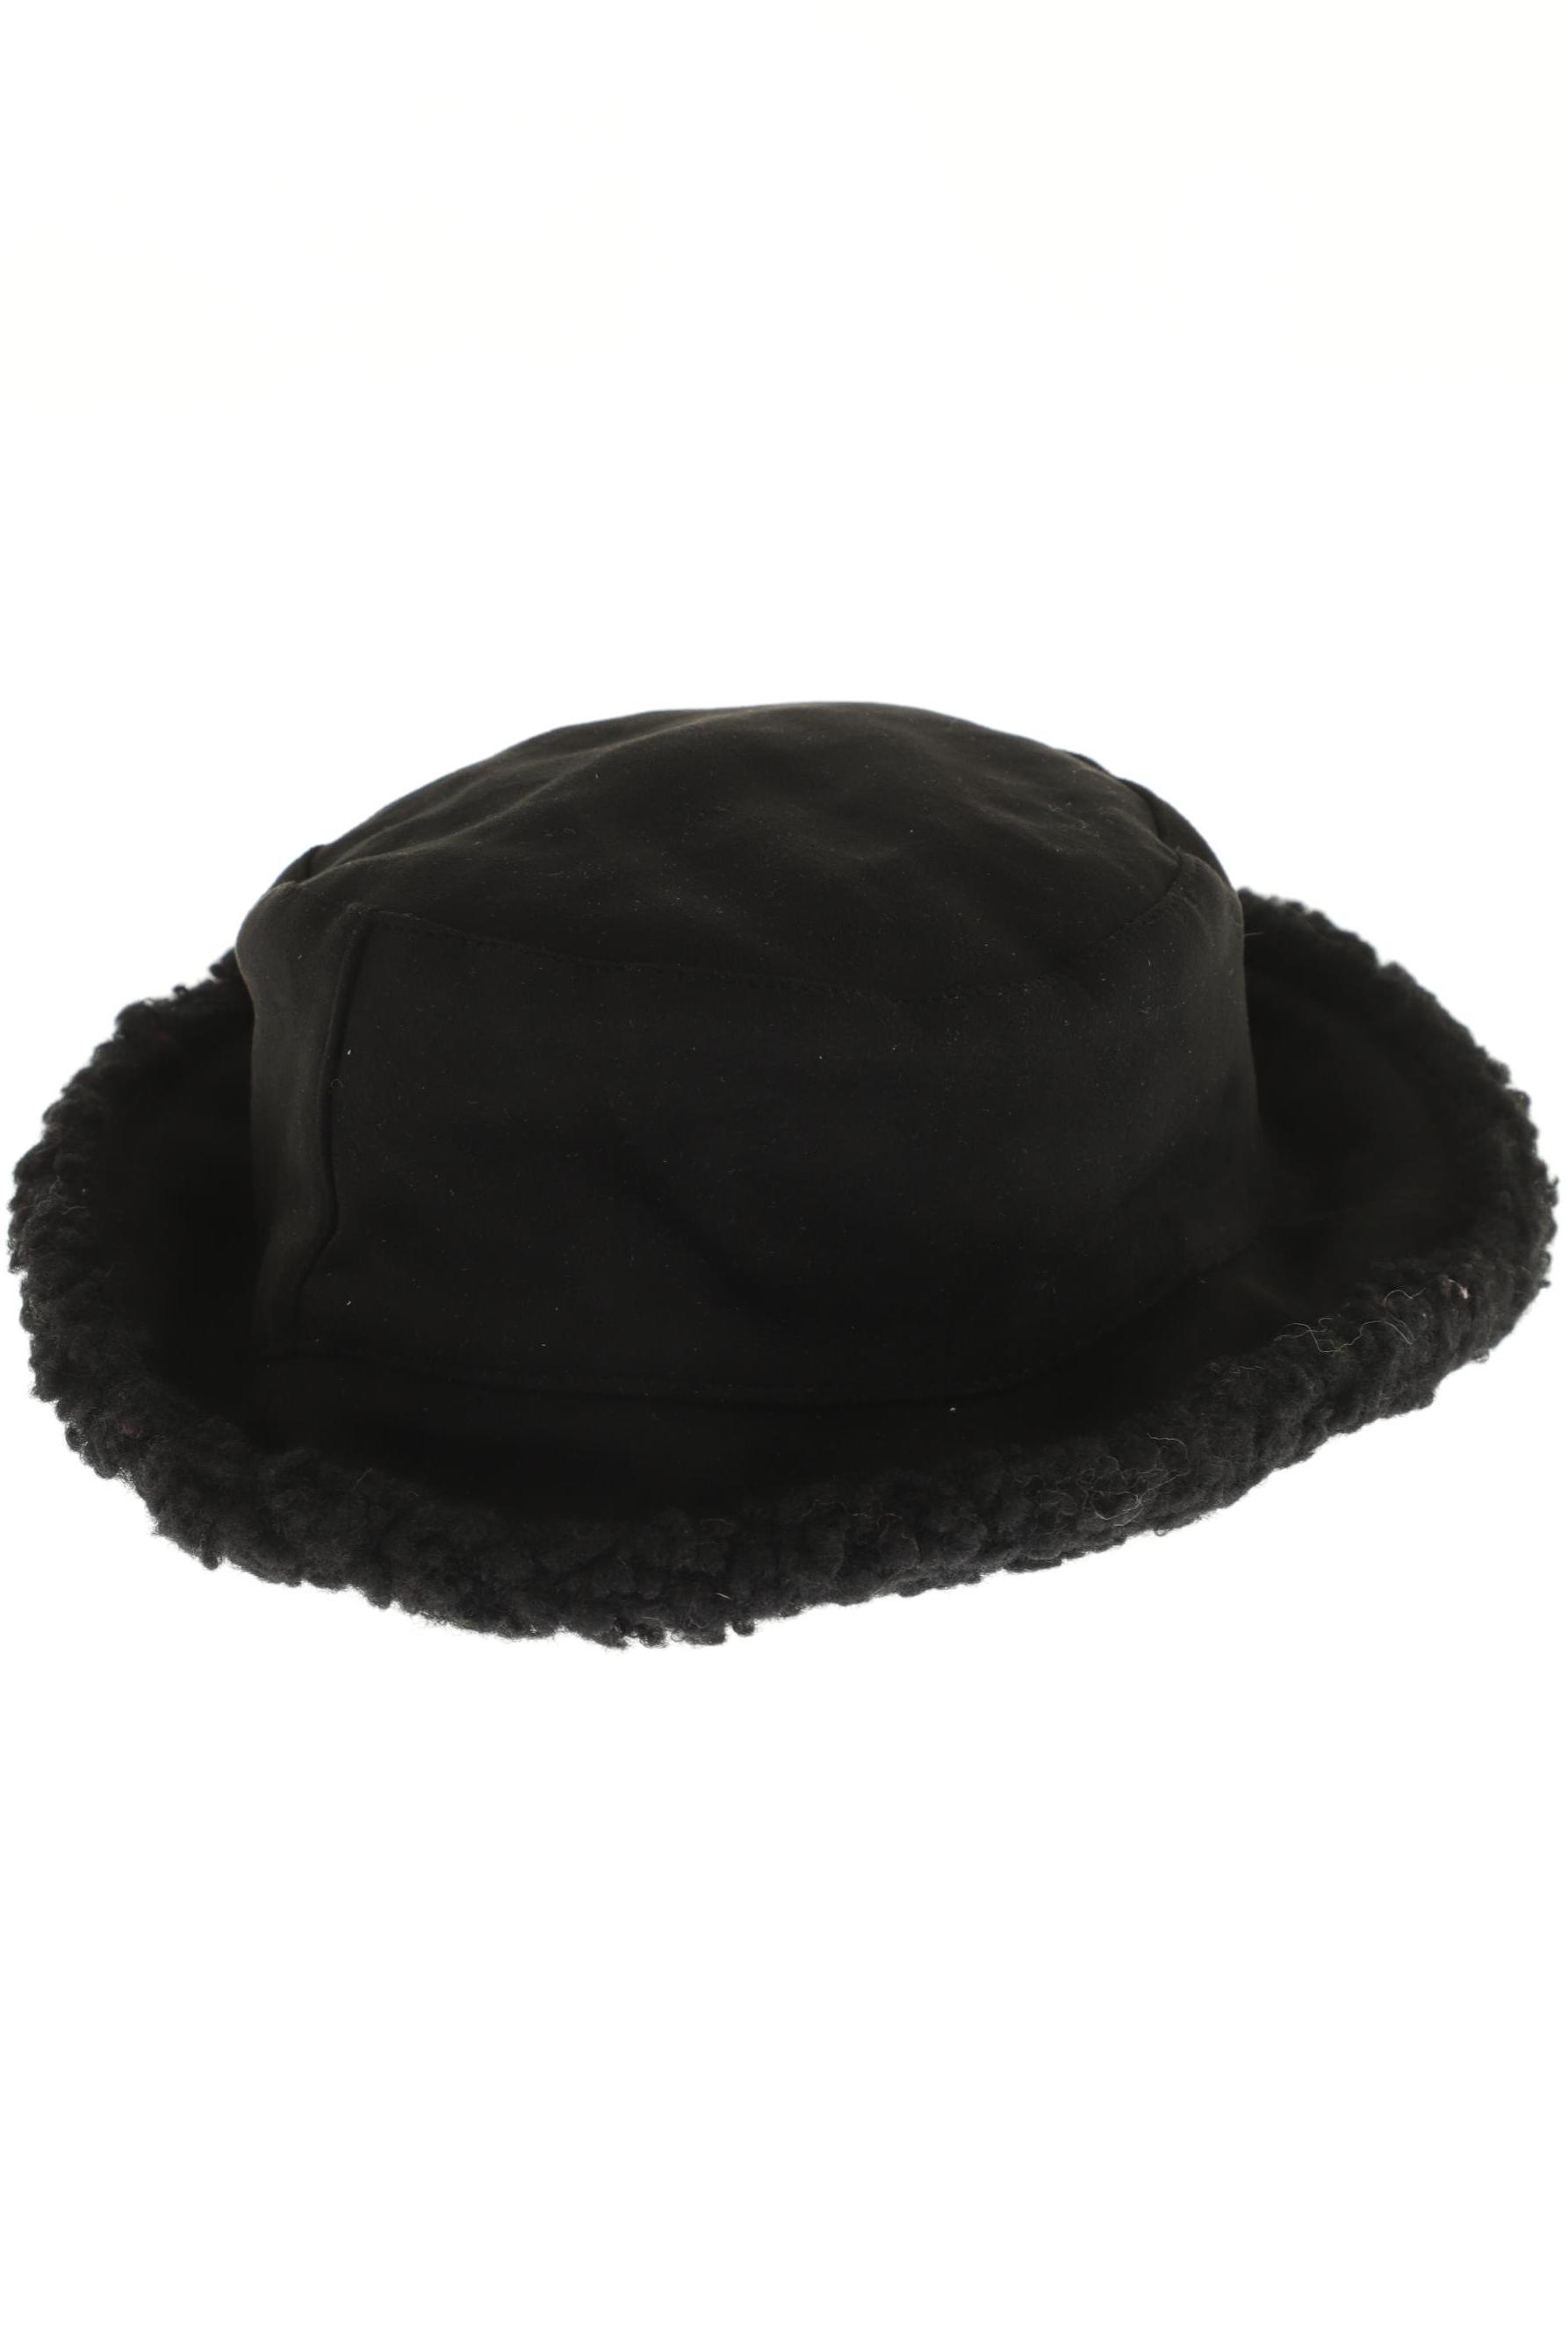 Rino&Pelle Damen Hut/Mütze, schwarz, Gr. uni von RINO&PELLE